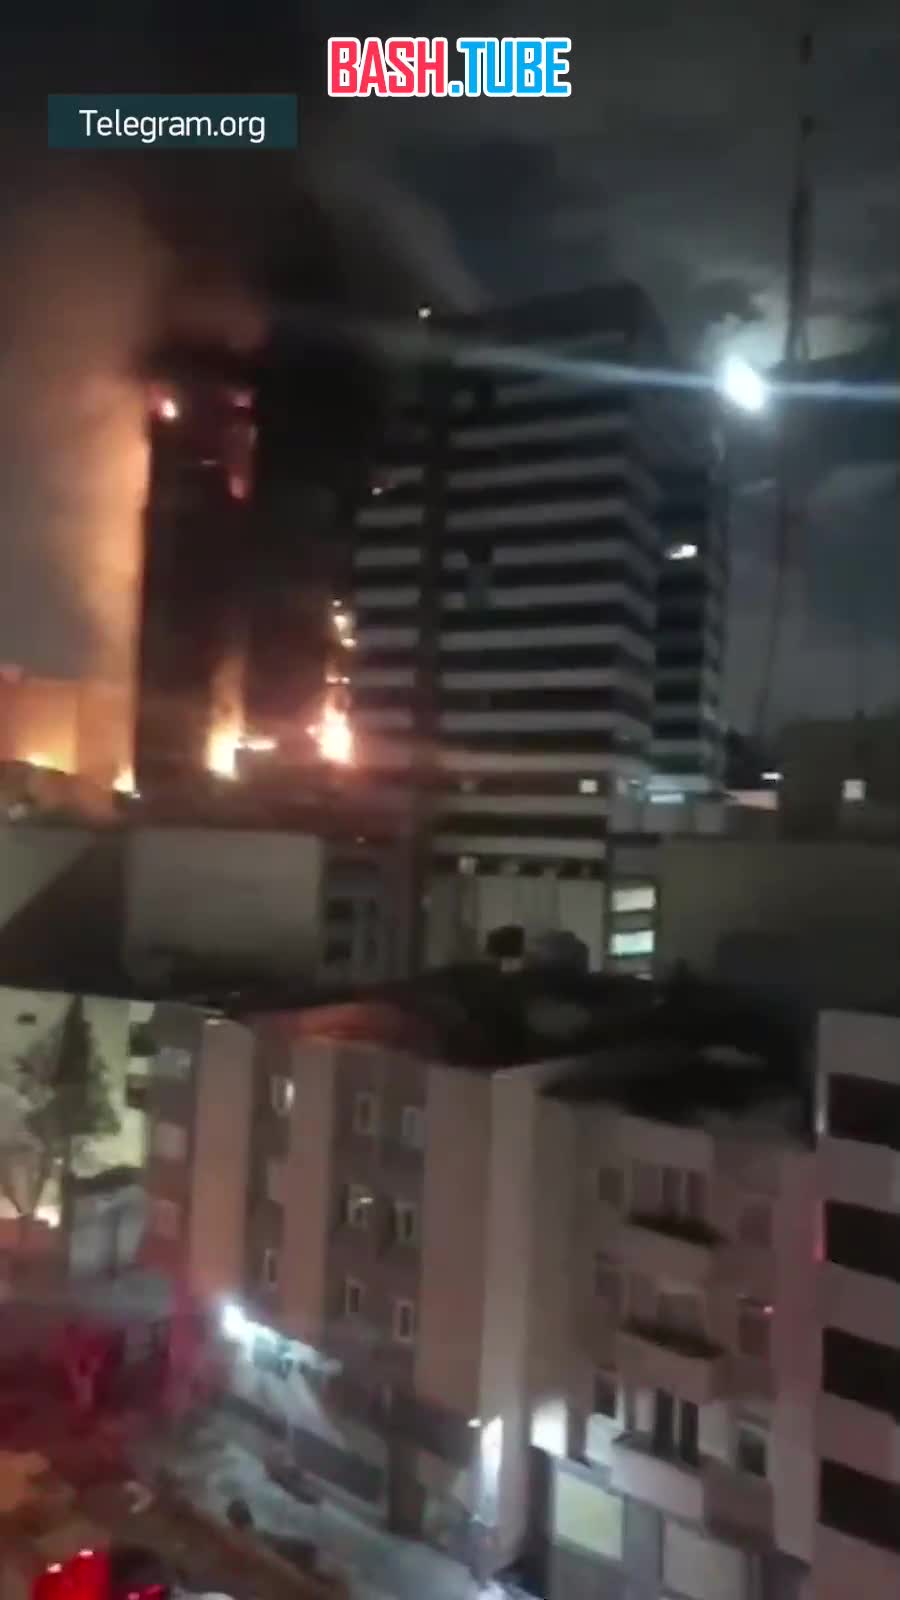  Больница Ганди вспыхнула как факел в Тегеране, огромные языки пламени вырываются из здания